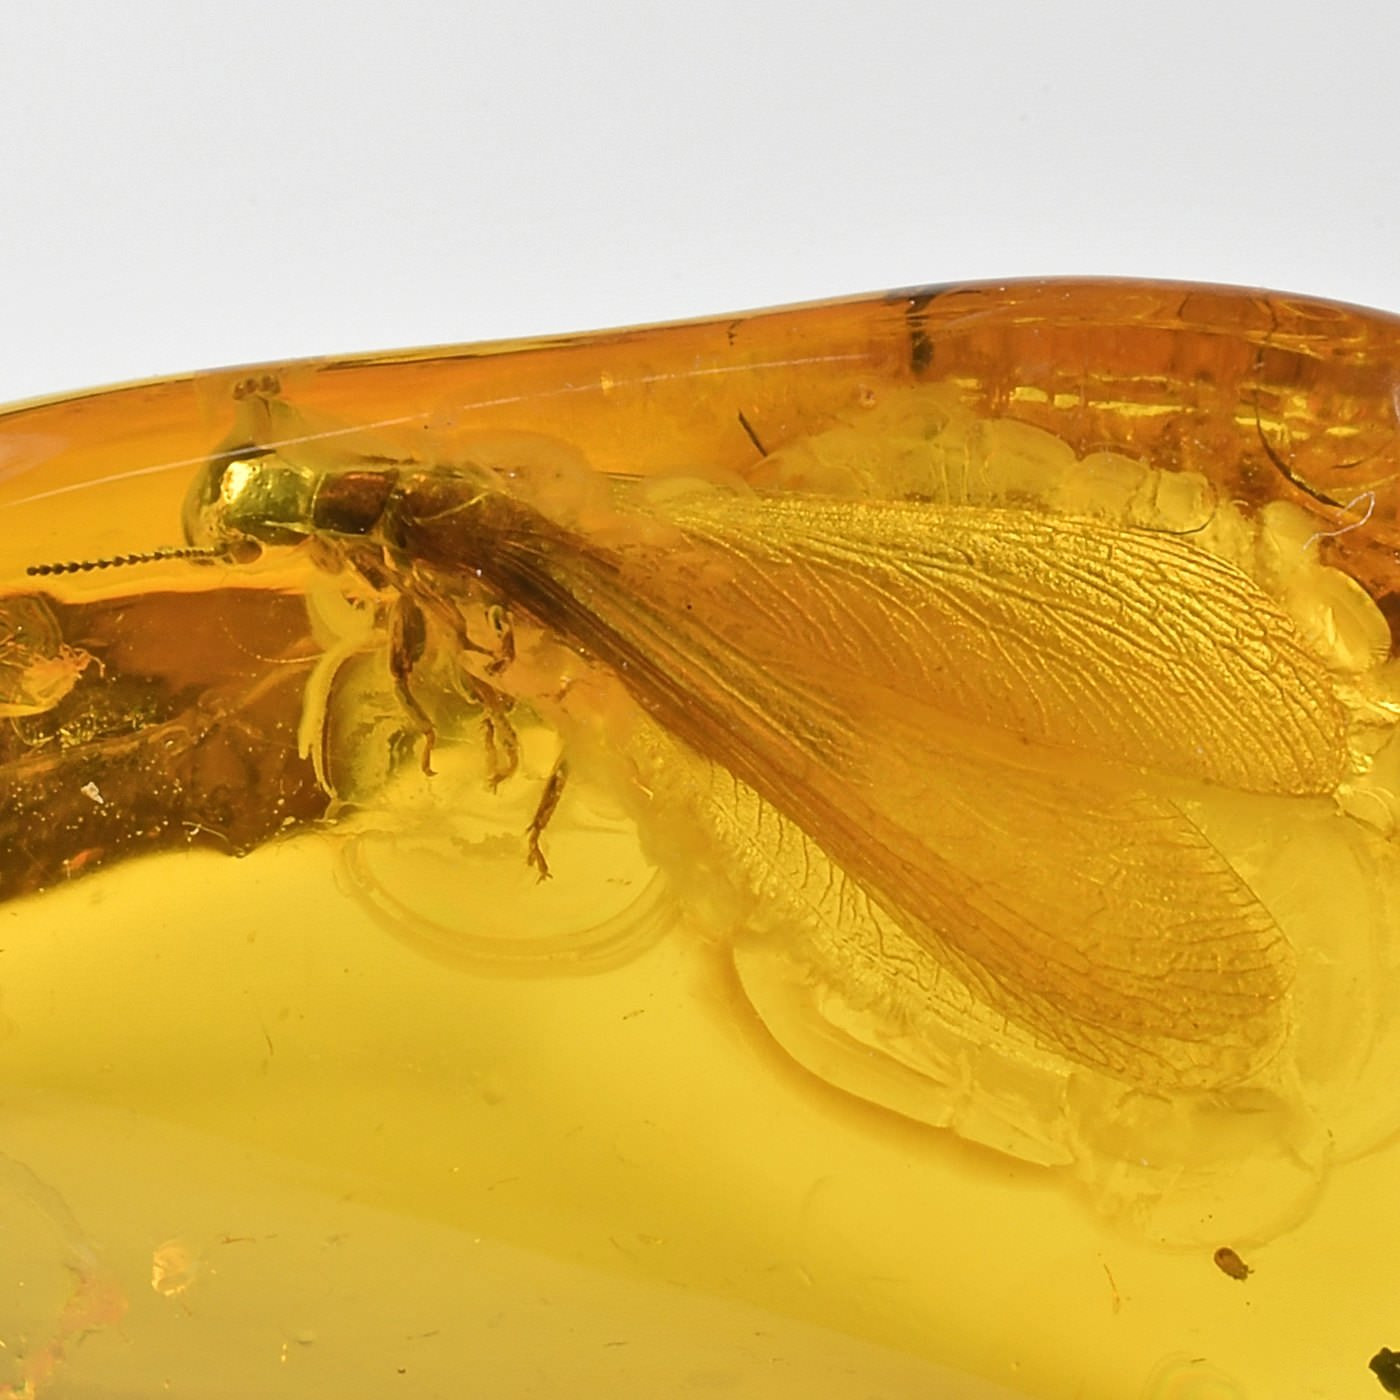 Bernstein Inkluse mit schöner geflügelter Termite Isoptera